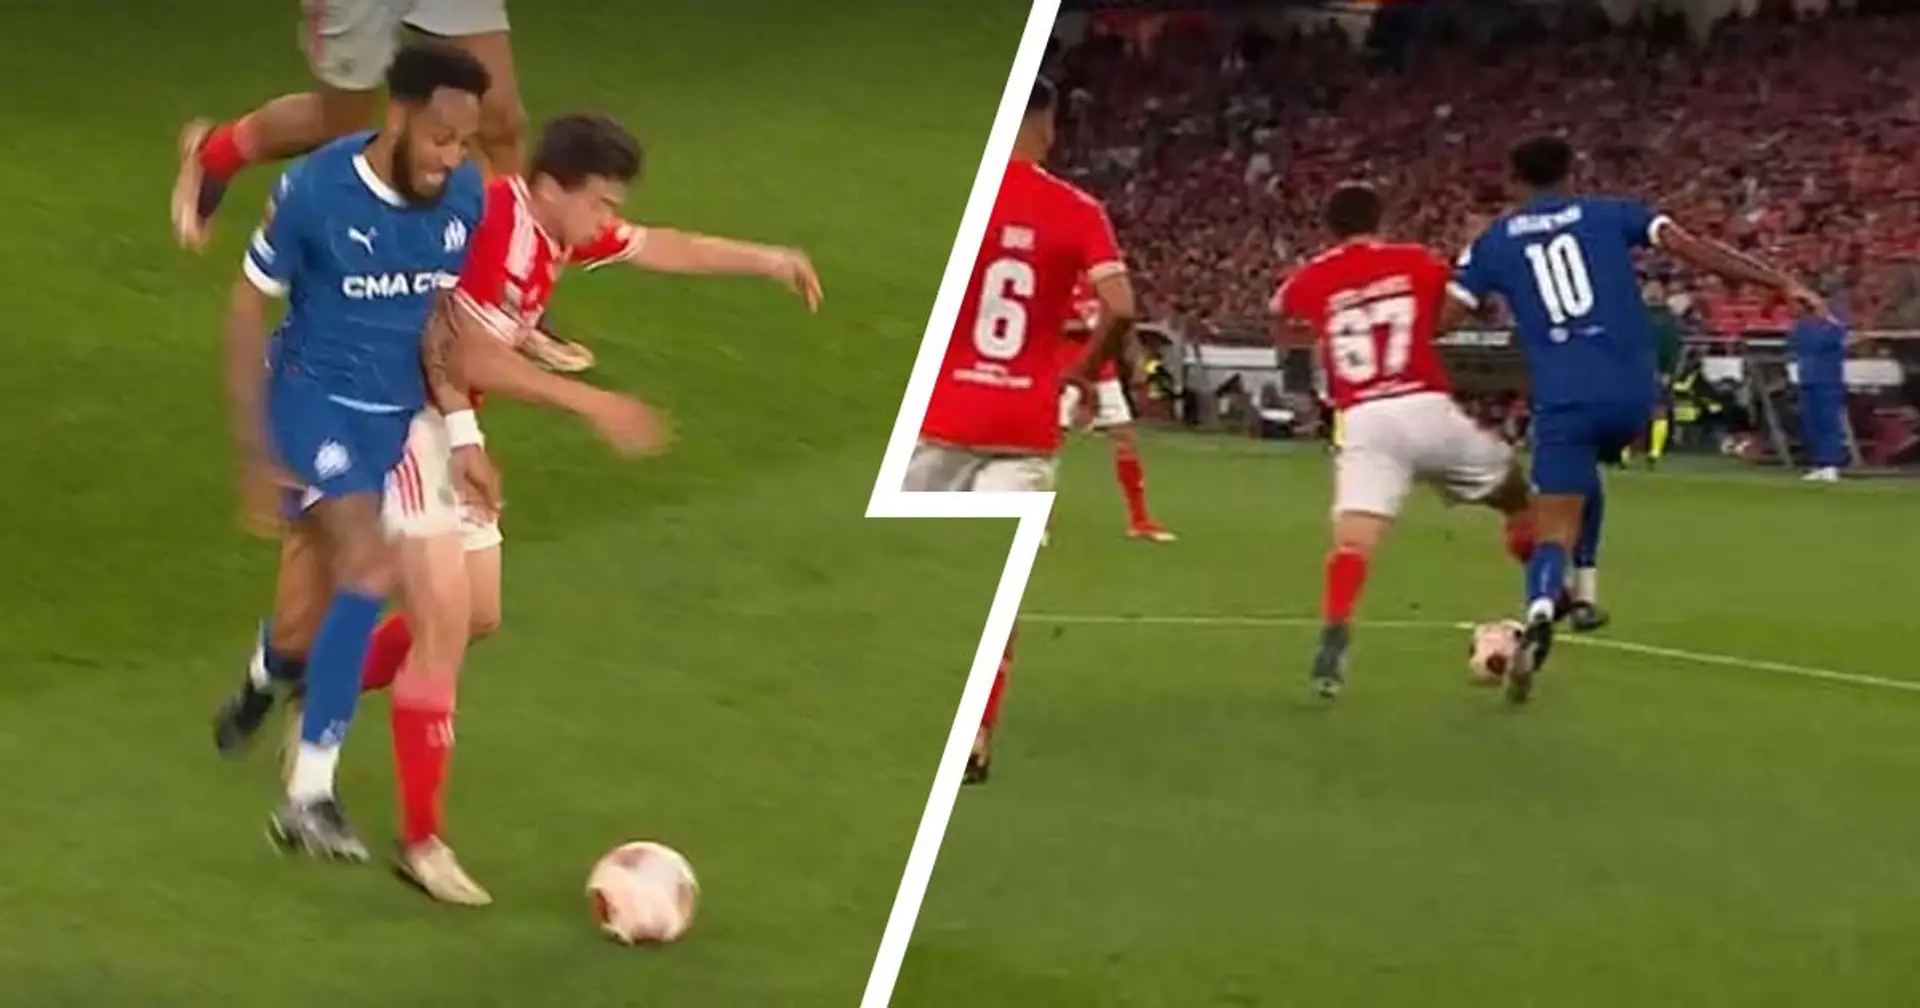 Deux angles de caméra différents montrent qu'il y a eu faute sur Aubameyang à la 58e minute face au Benfica